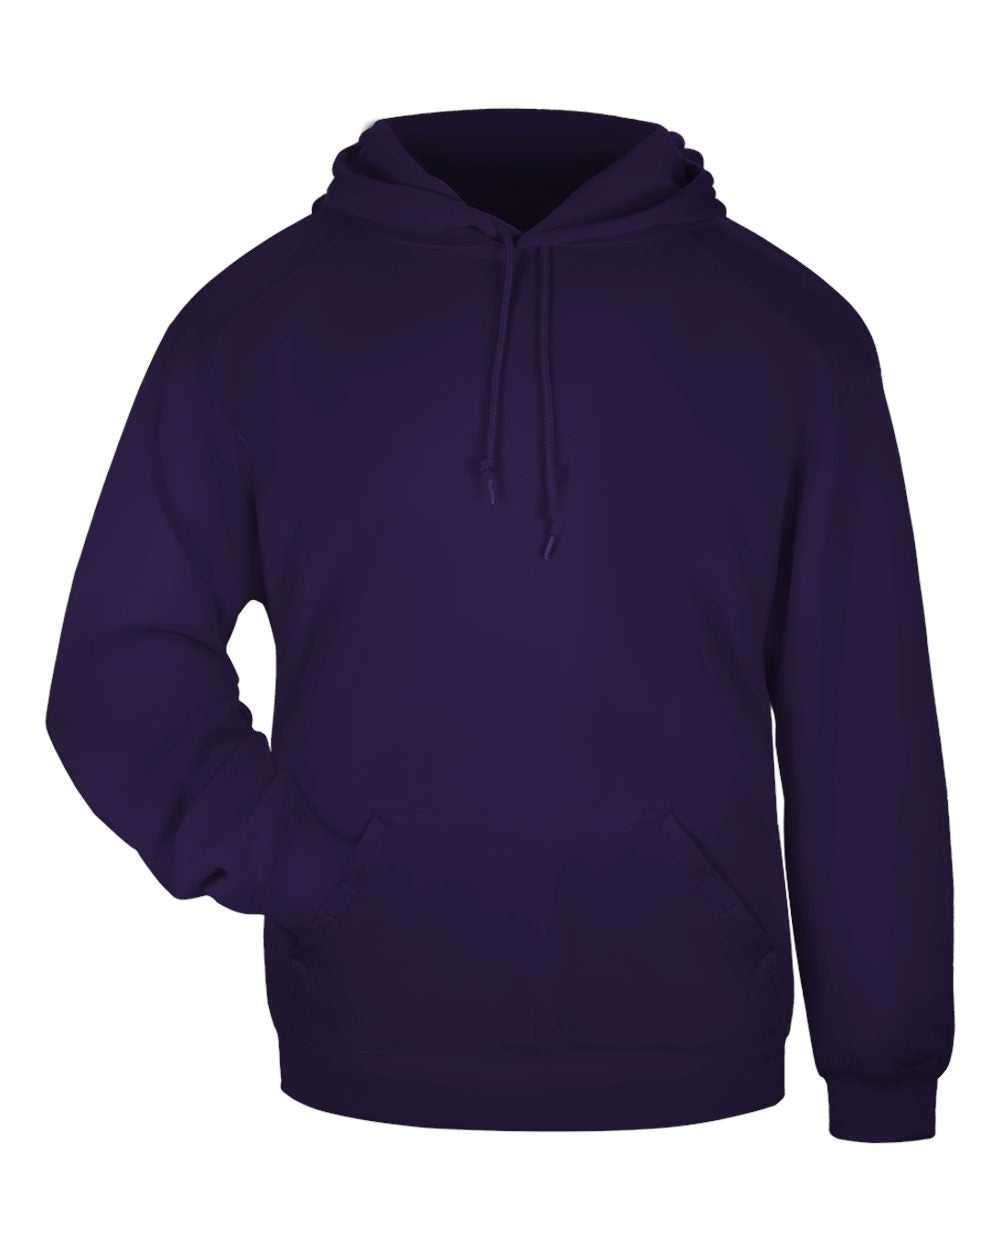 Badger Sport 1254 Hooded Sweatshirt - Purple - HIT a Double - 1